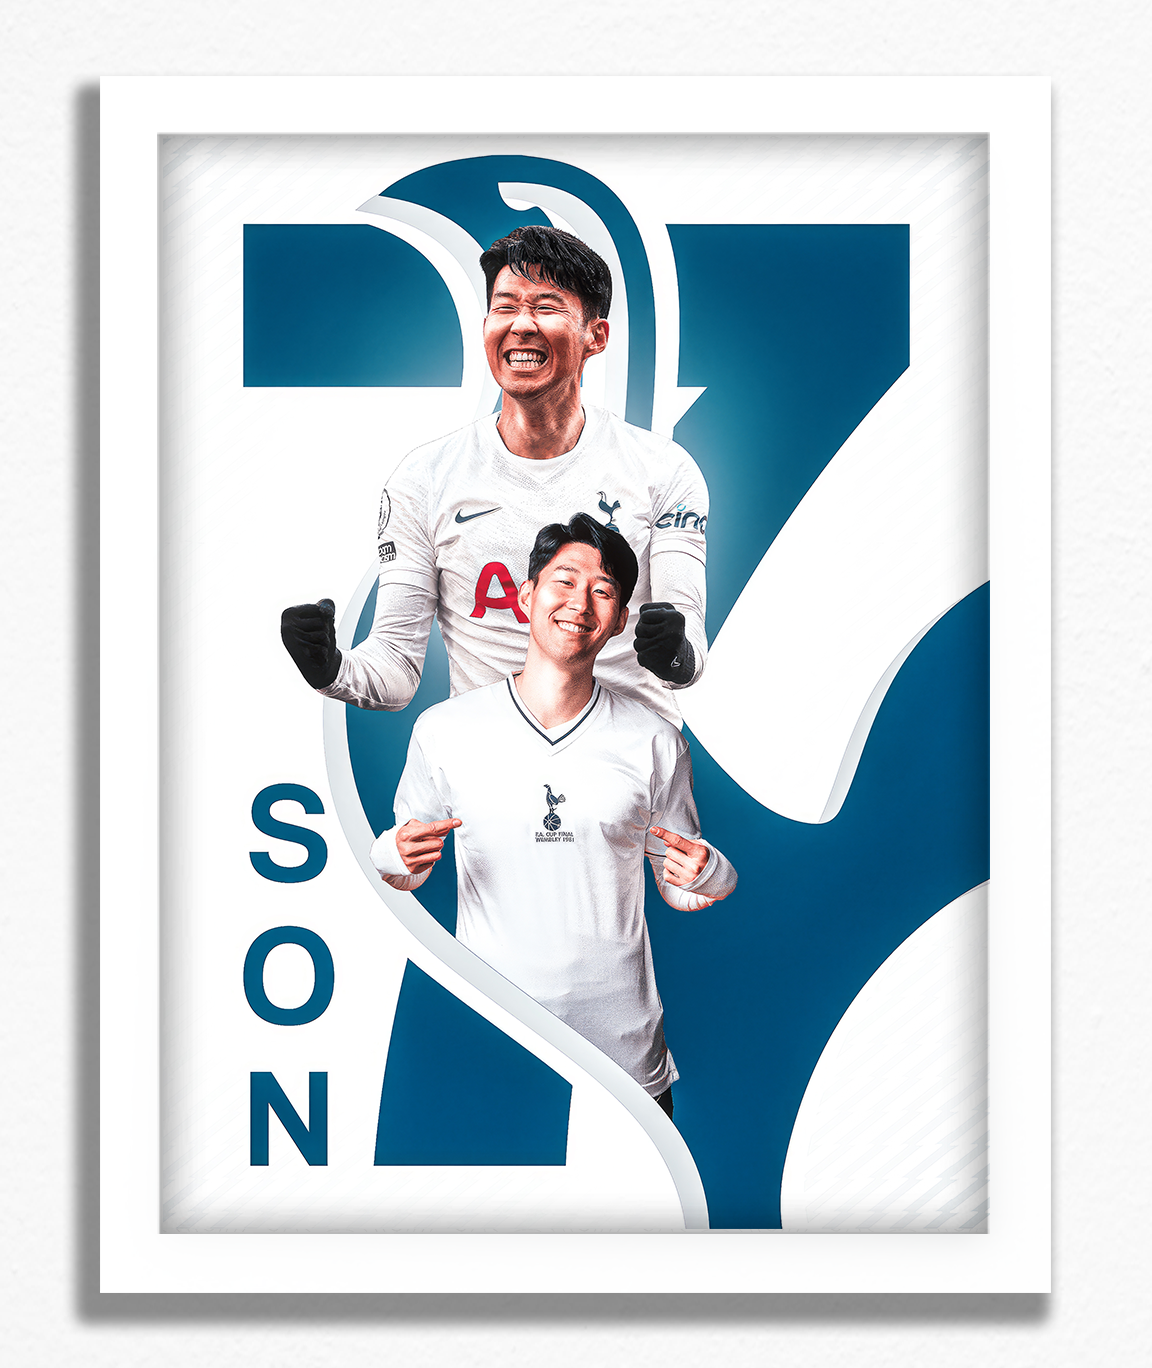 Son Heung-min - Tottenham